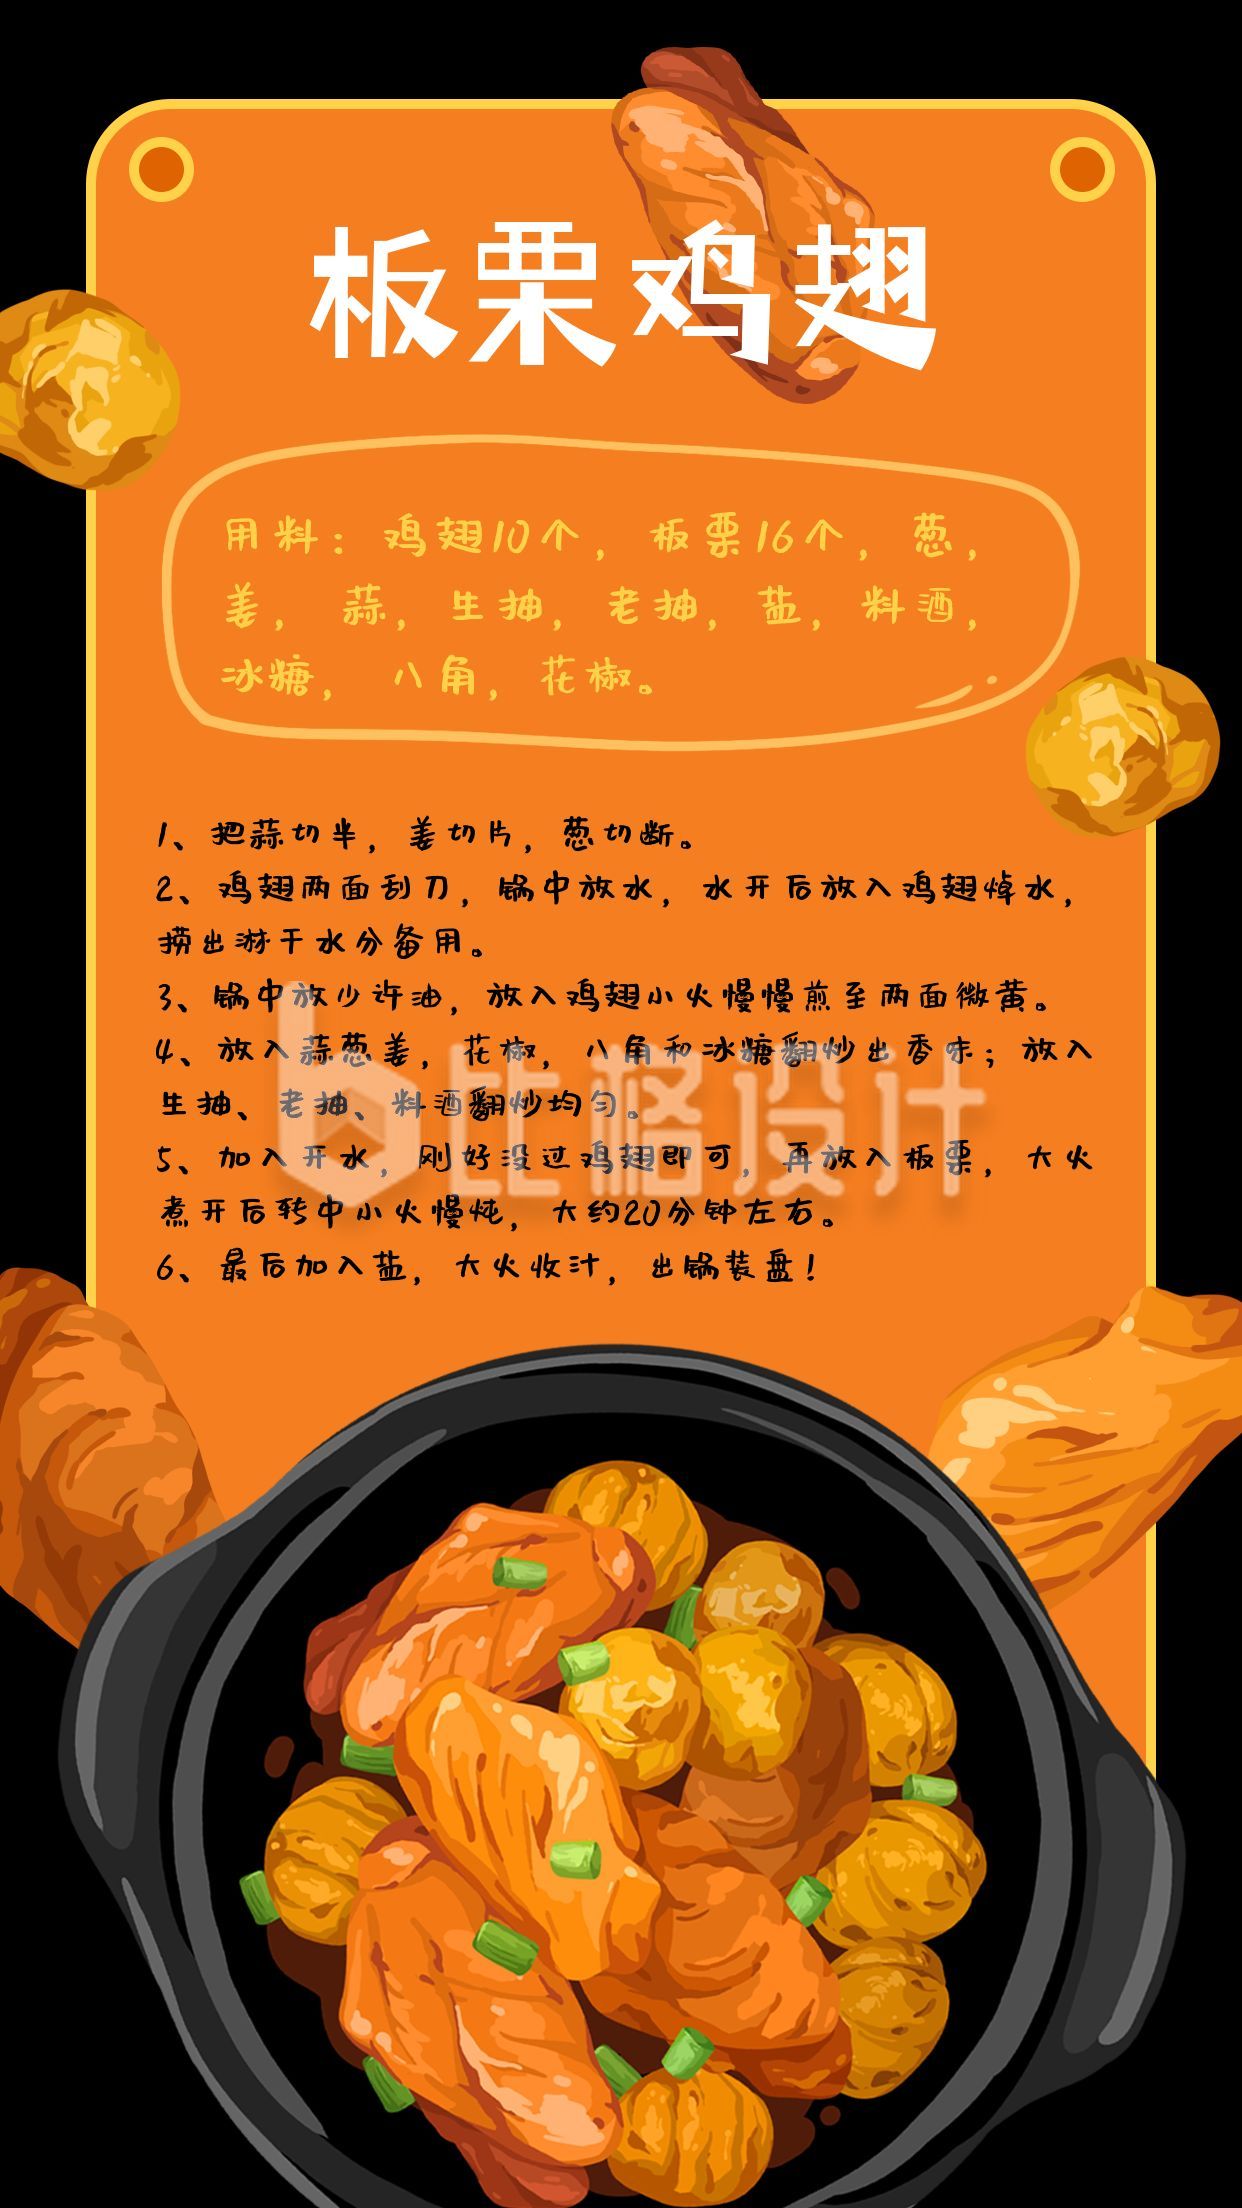 板栗鸡翅菜谱教程手绘插画手机海报